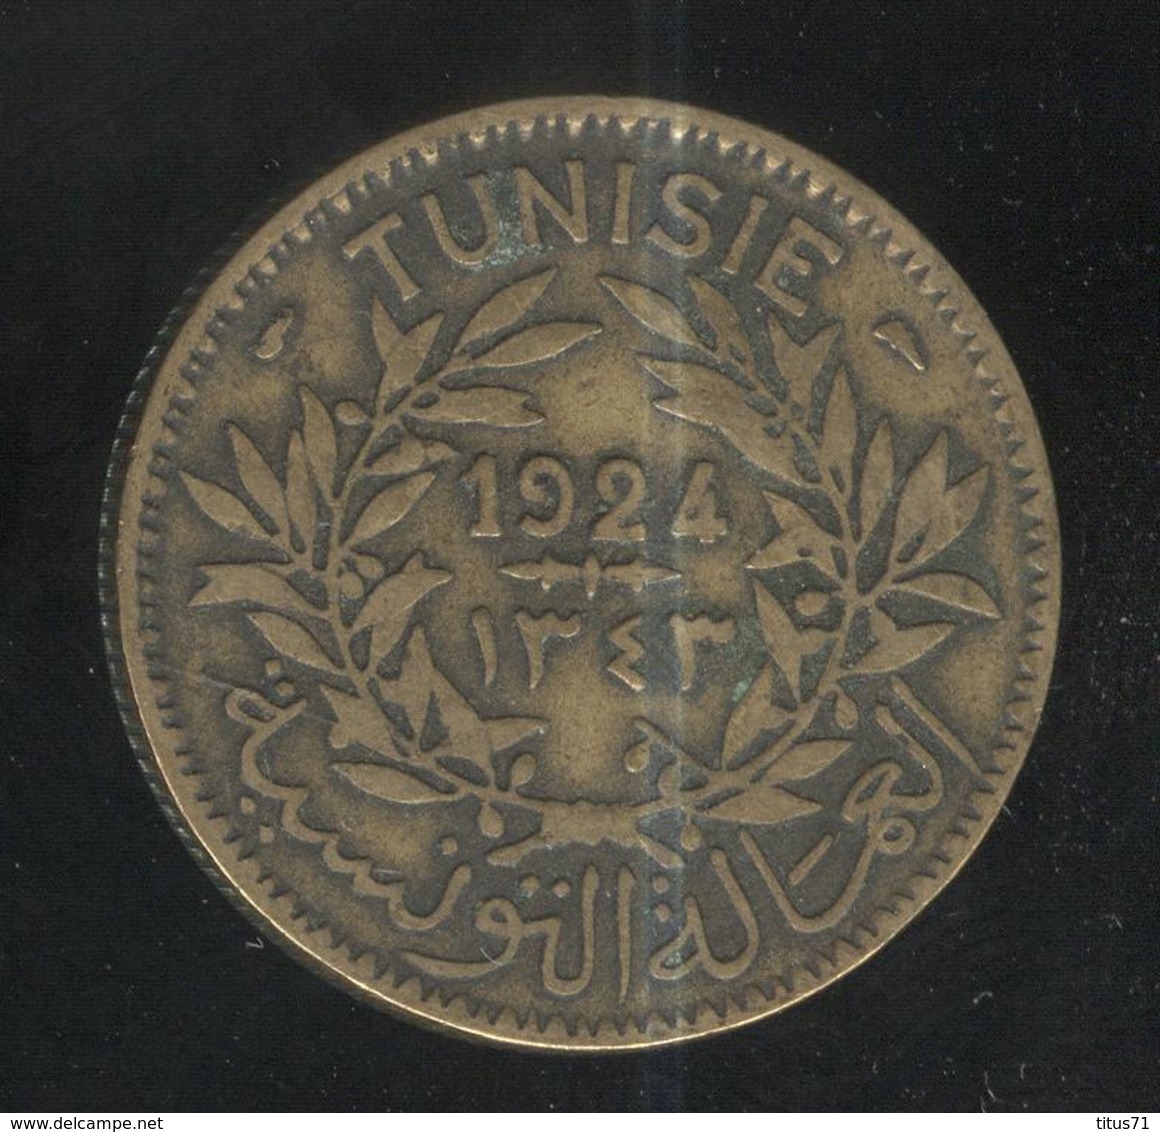 2 Francs Tunisie 1924